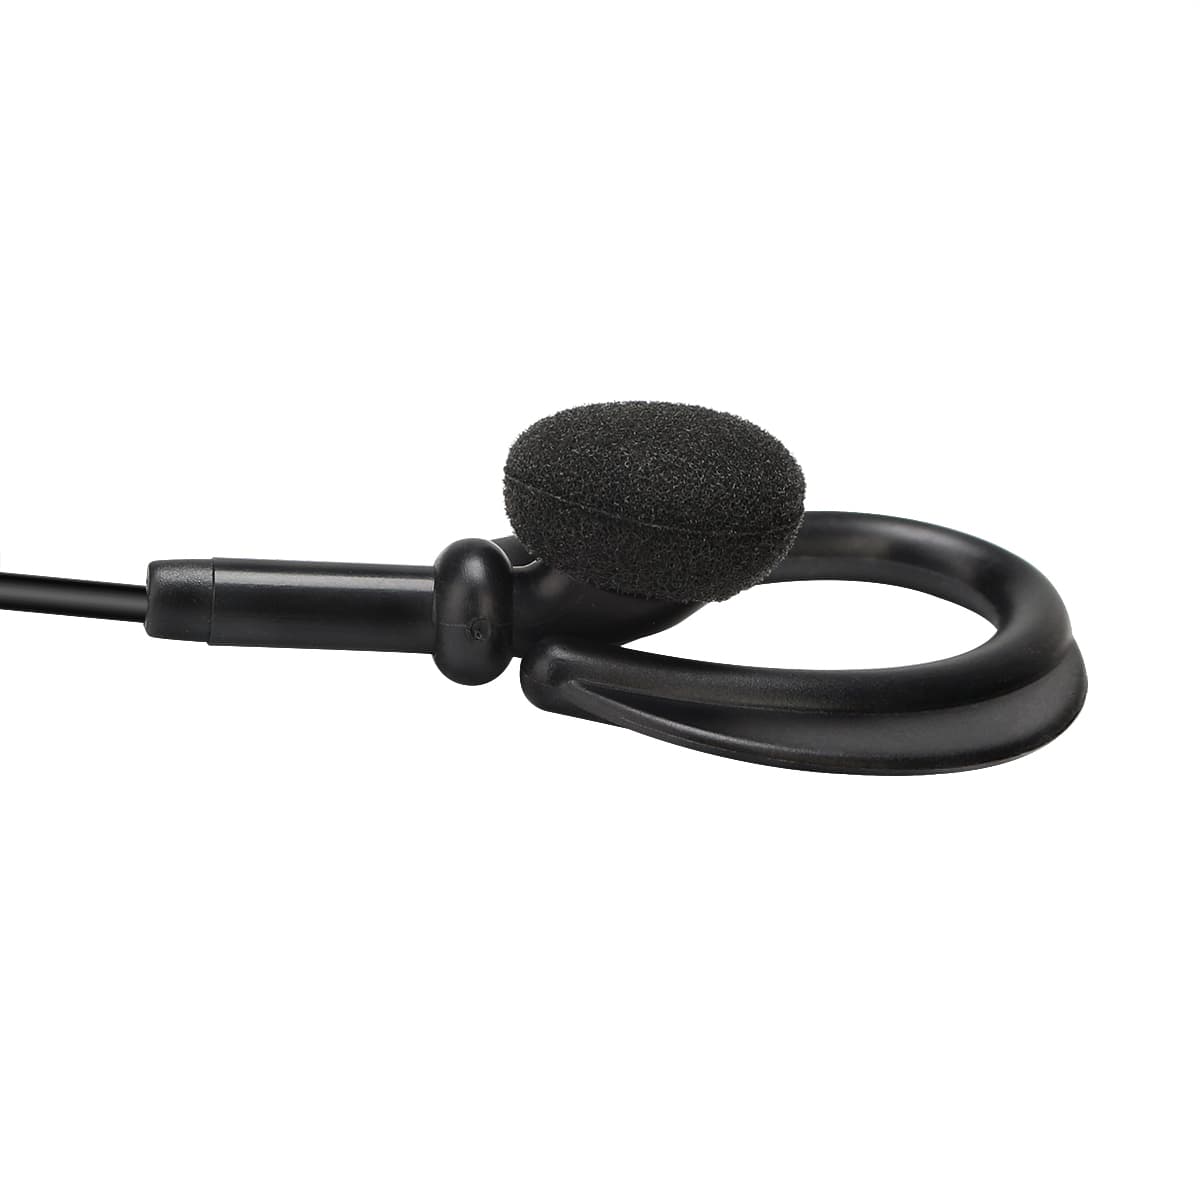 Retevis EEK008 D-Shape Ear Hook